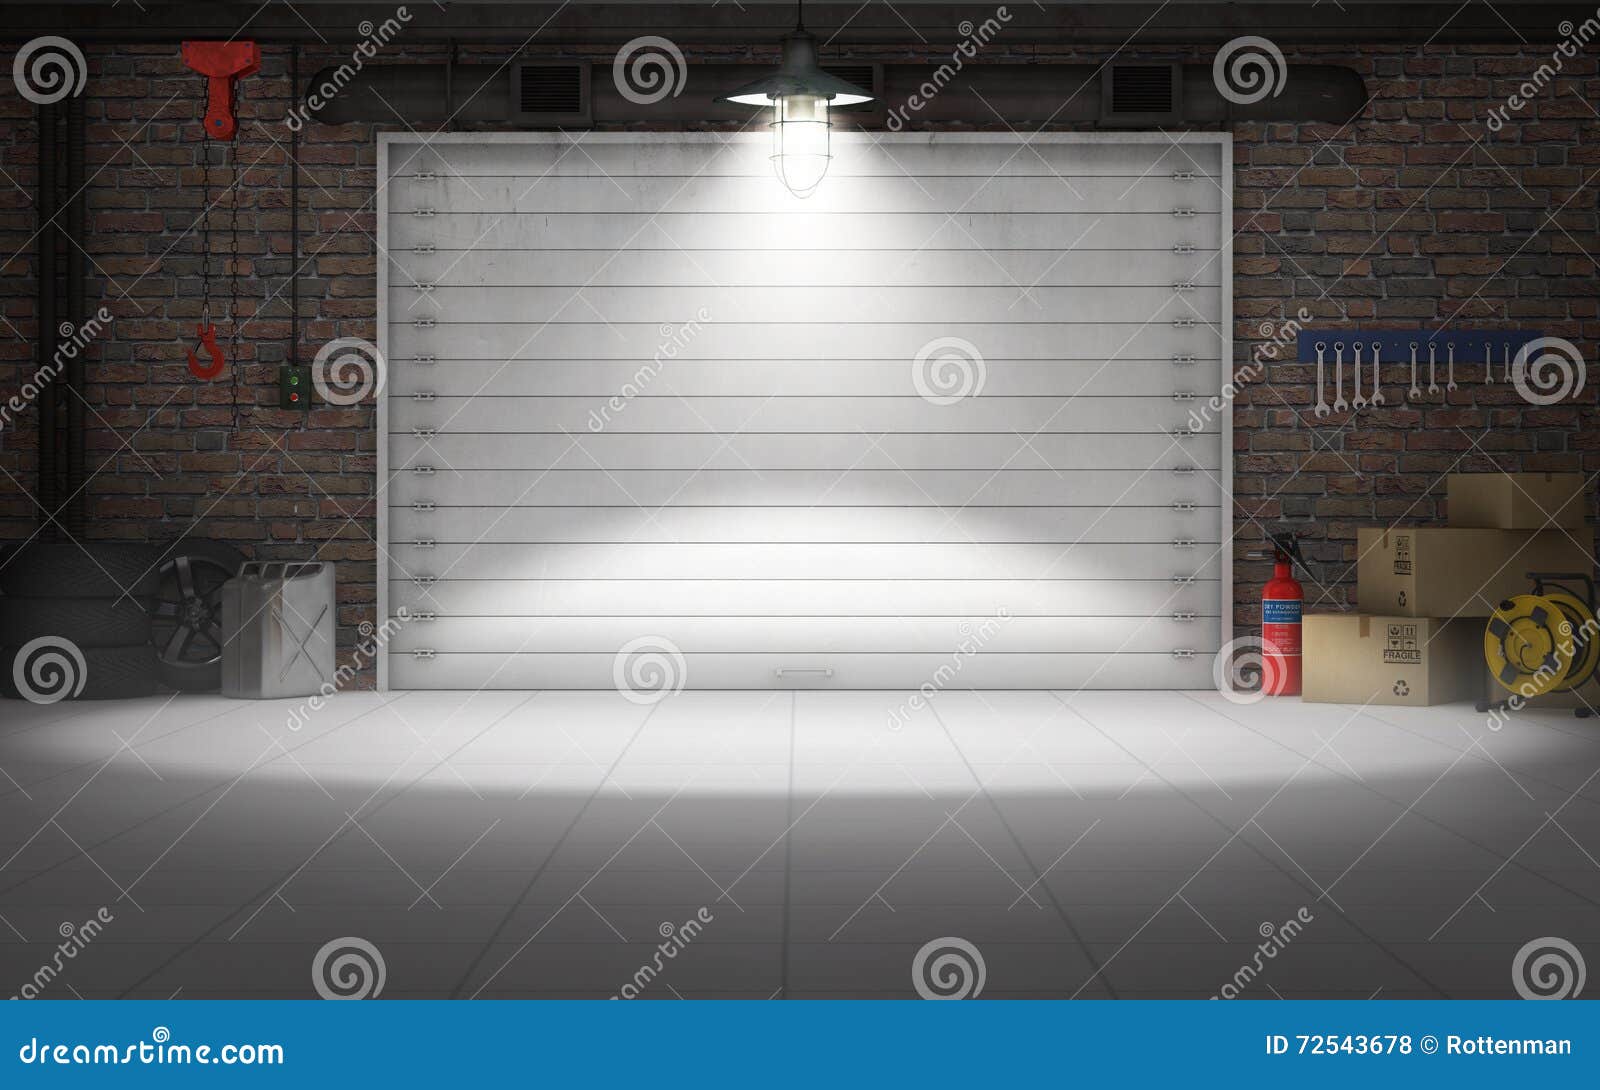 empty car repair garage background